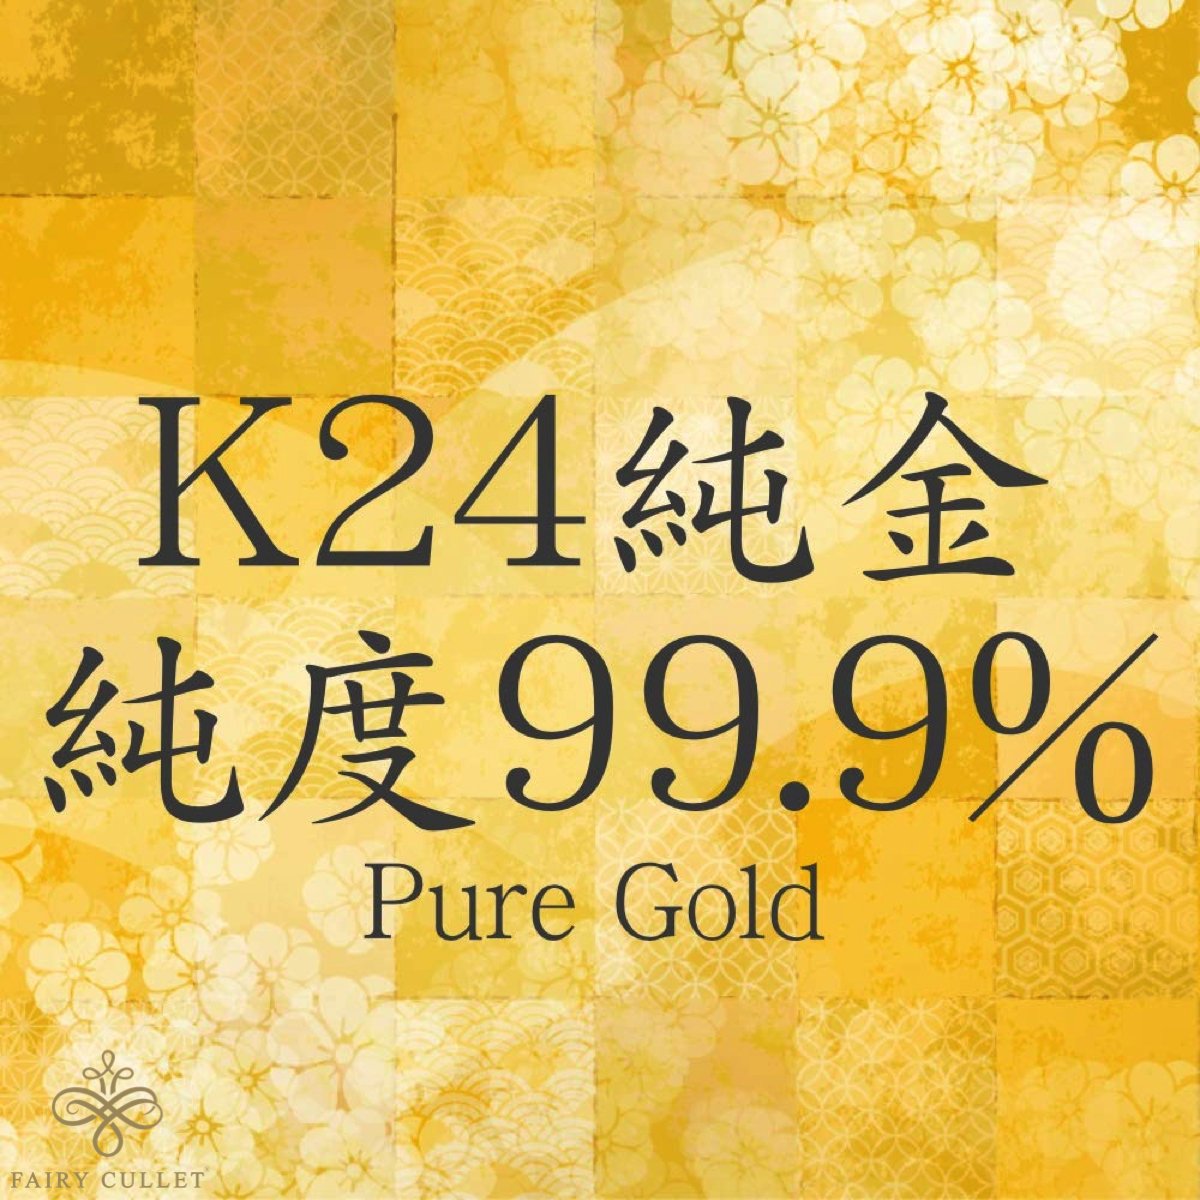 24金ネックレス K24 6面W喜平チェーン 日本製 純金 検定印 12.9g 42cm ...